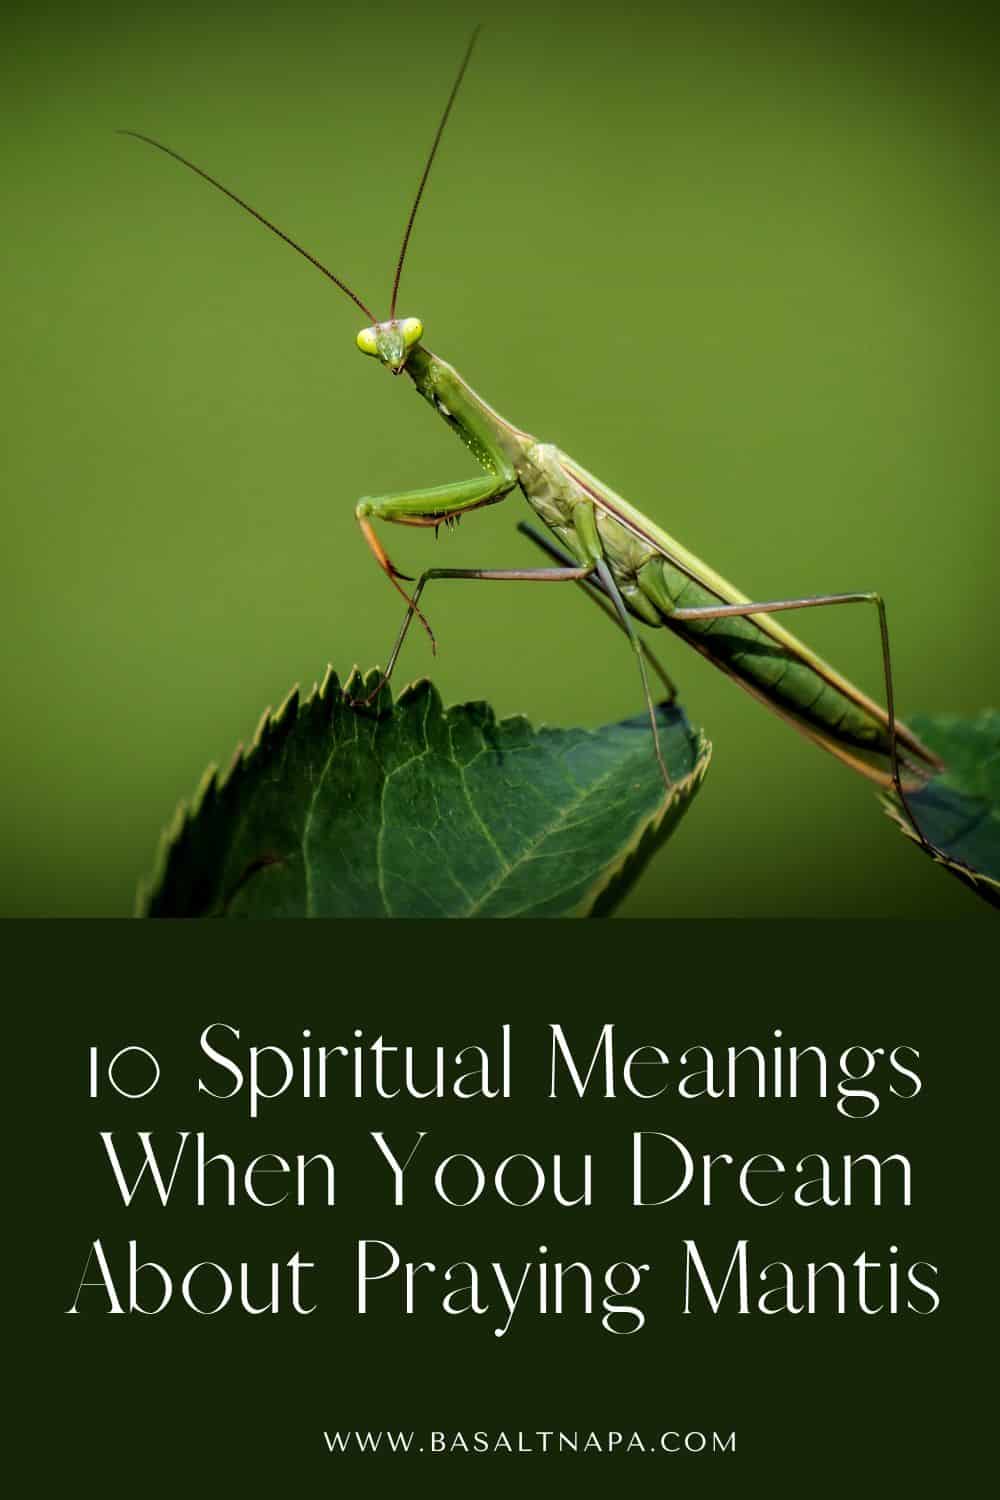 10 Spiritual Meanings When Yoou Dream About Praying Mantis